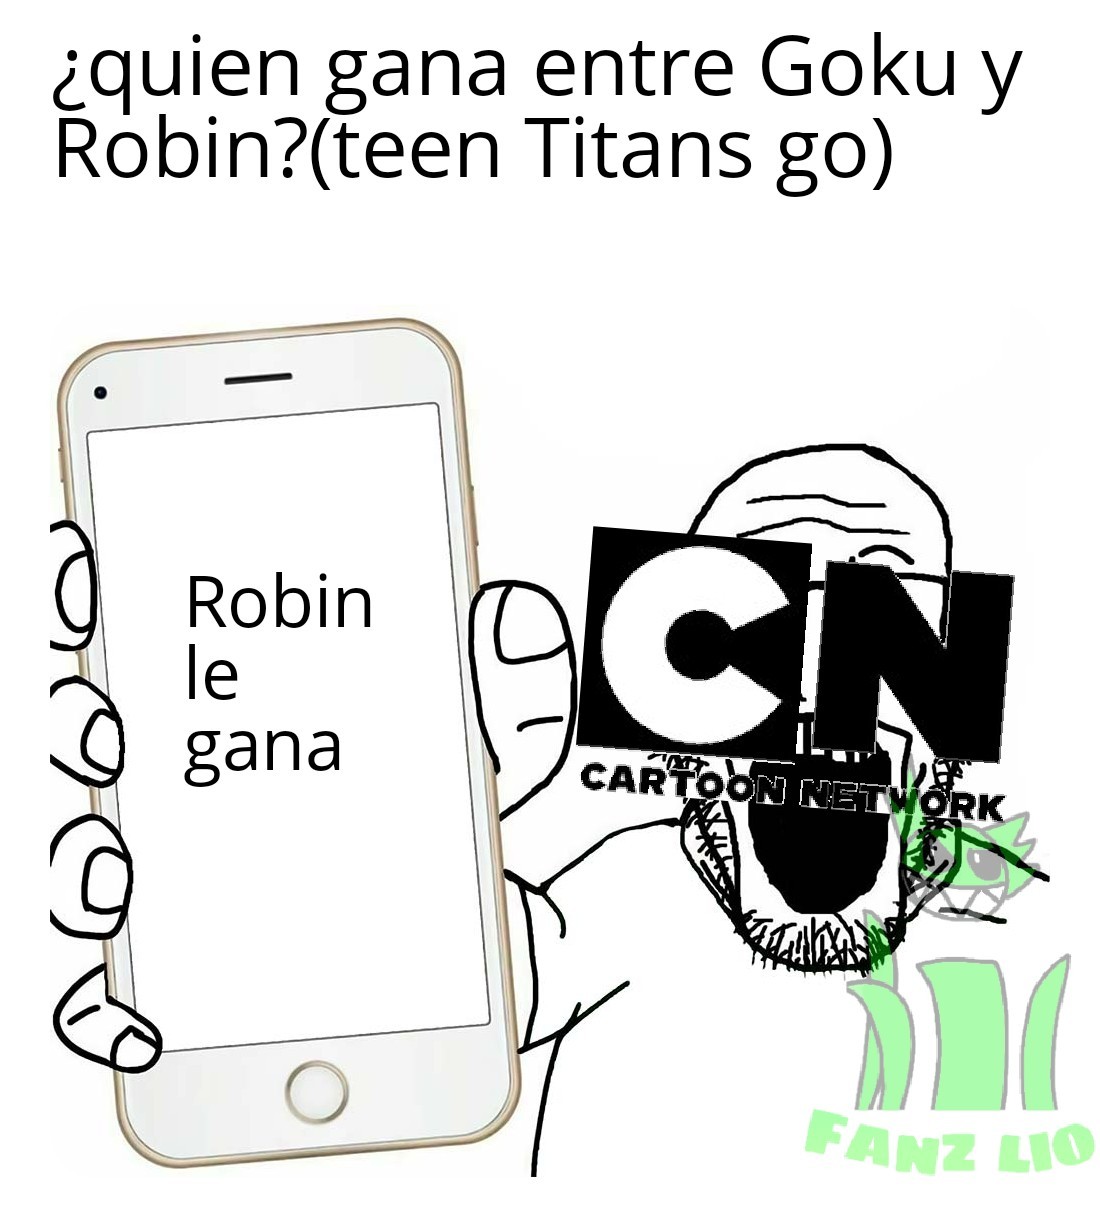 Odio teen Titans go , no me importa la opinión de cartoonetwork - meme